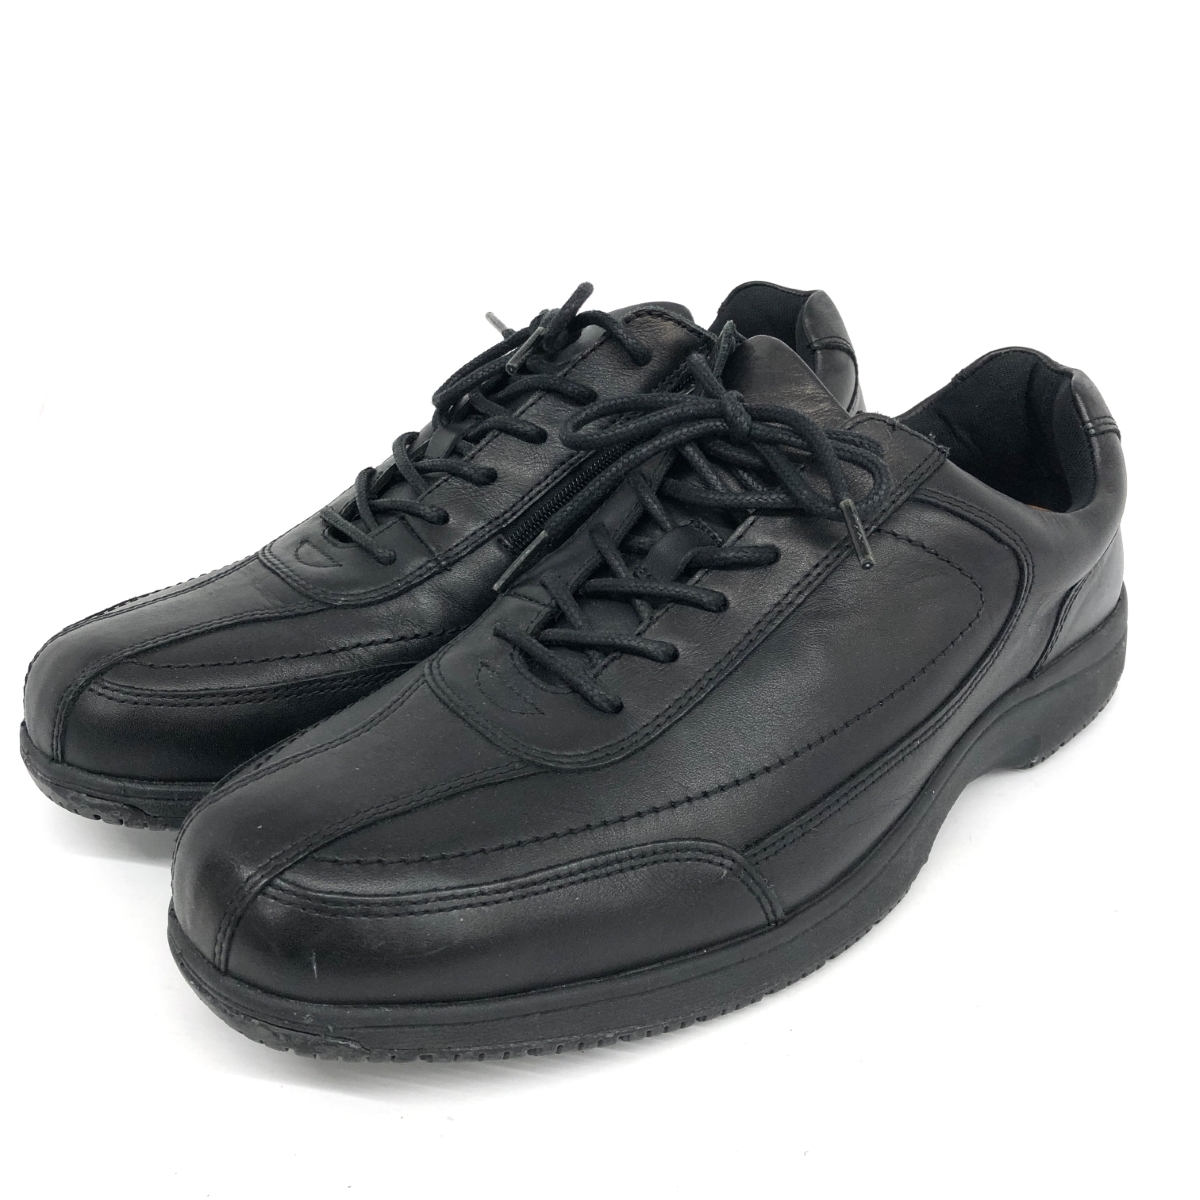  хороший *G.T.HAWKINS Hawkins обувь EUR42* черный мужской обувь обувь shoes кожа память Fit 